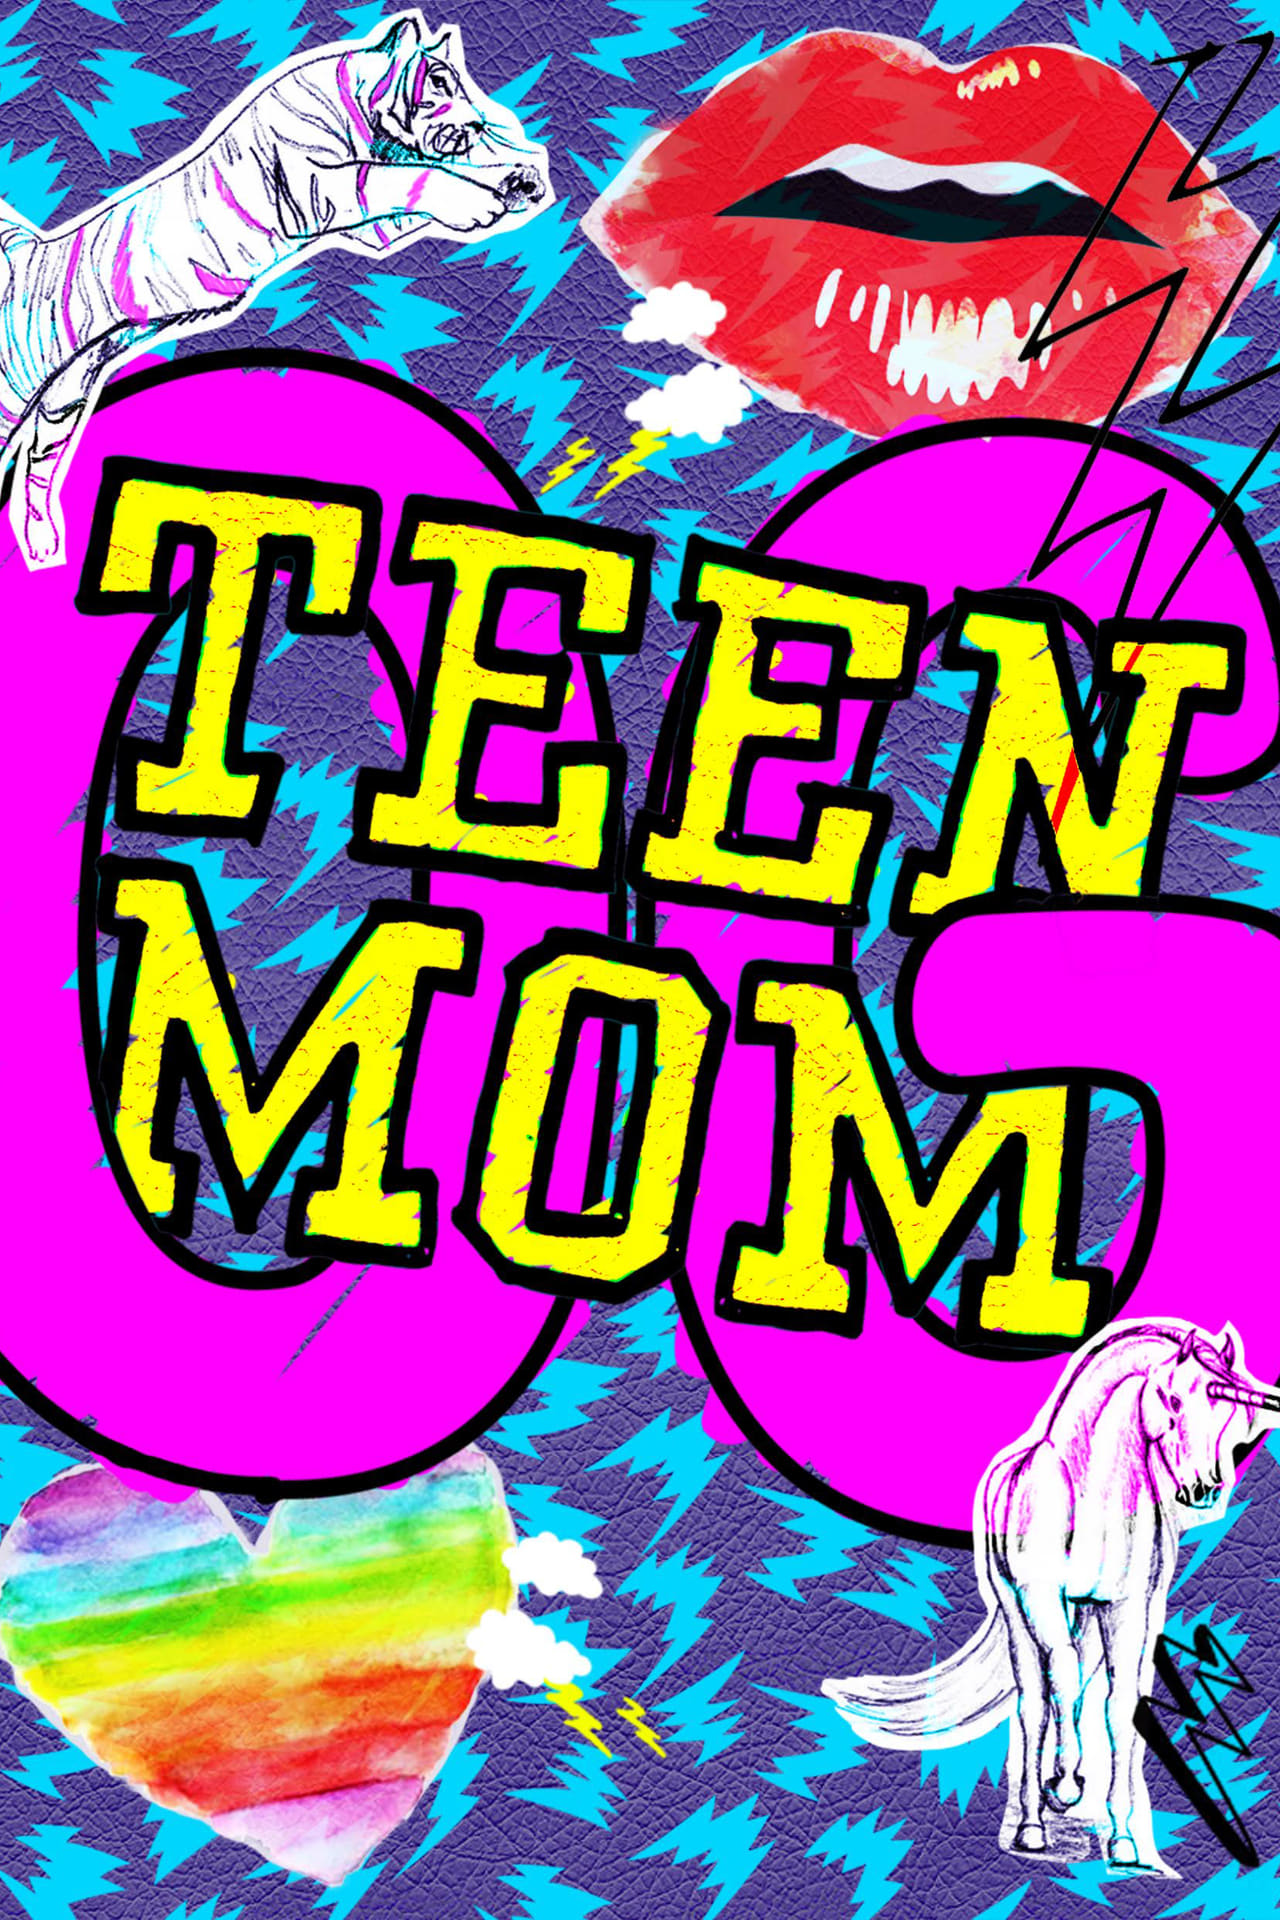 Teen Mom Season 7